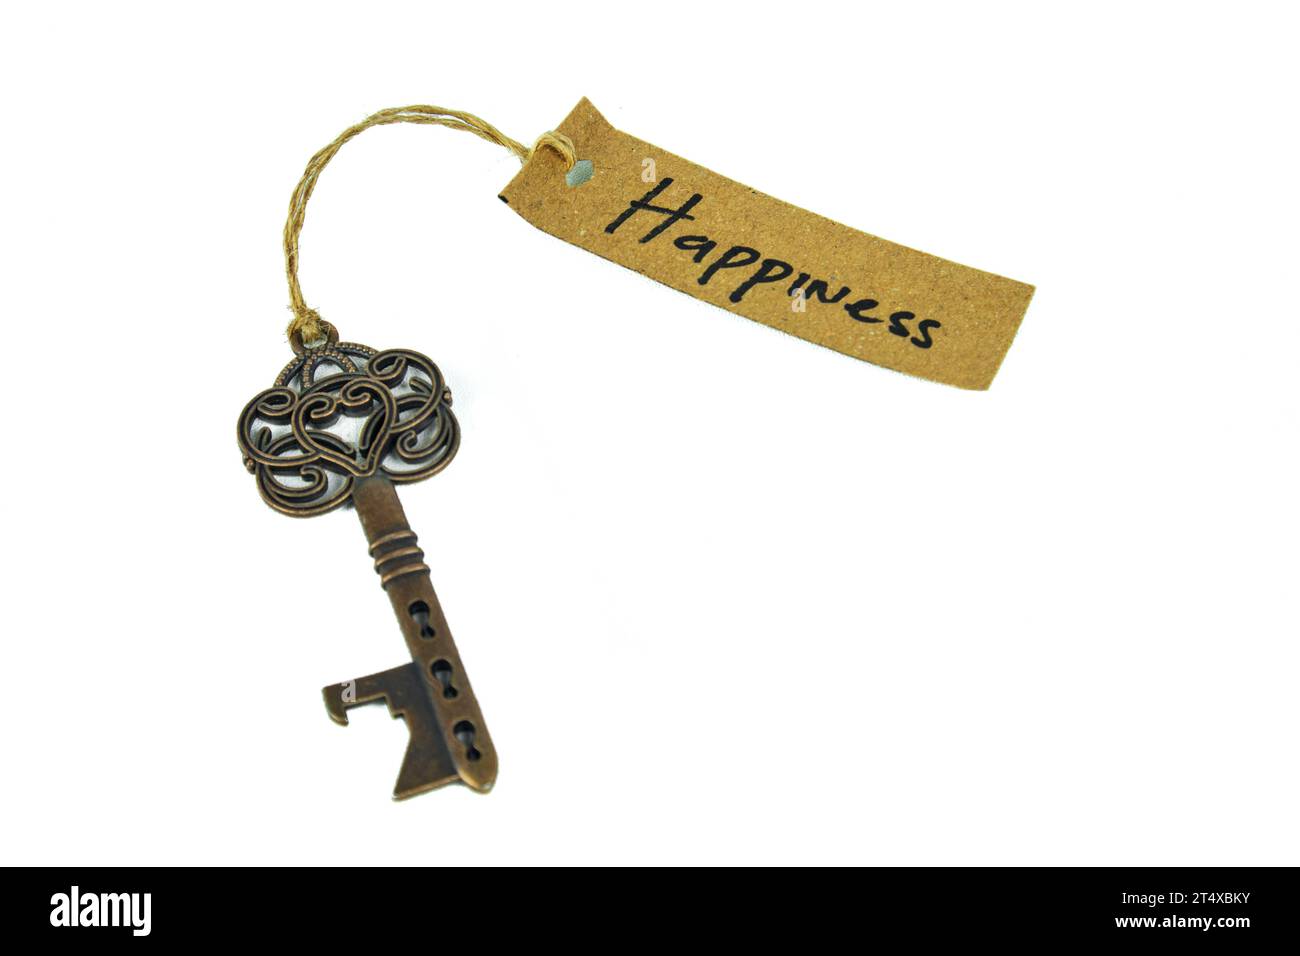 Alter dekorativer Schlüssel und handgeschriebenes Etikett „Happiness“, gebunden mit Strohseil auf weißem Hintergrund Stockfoto